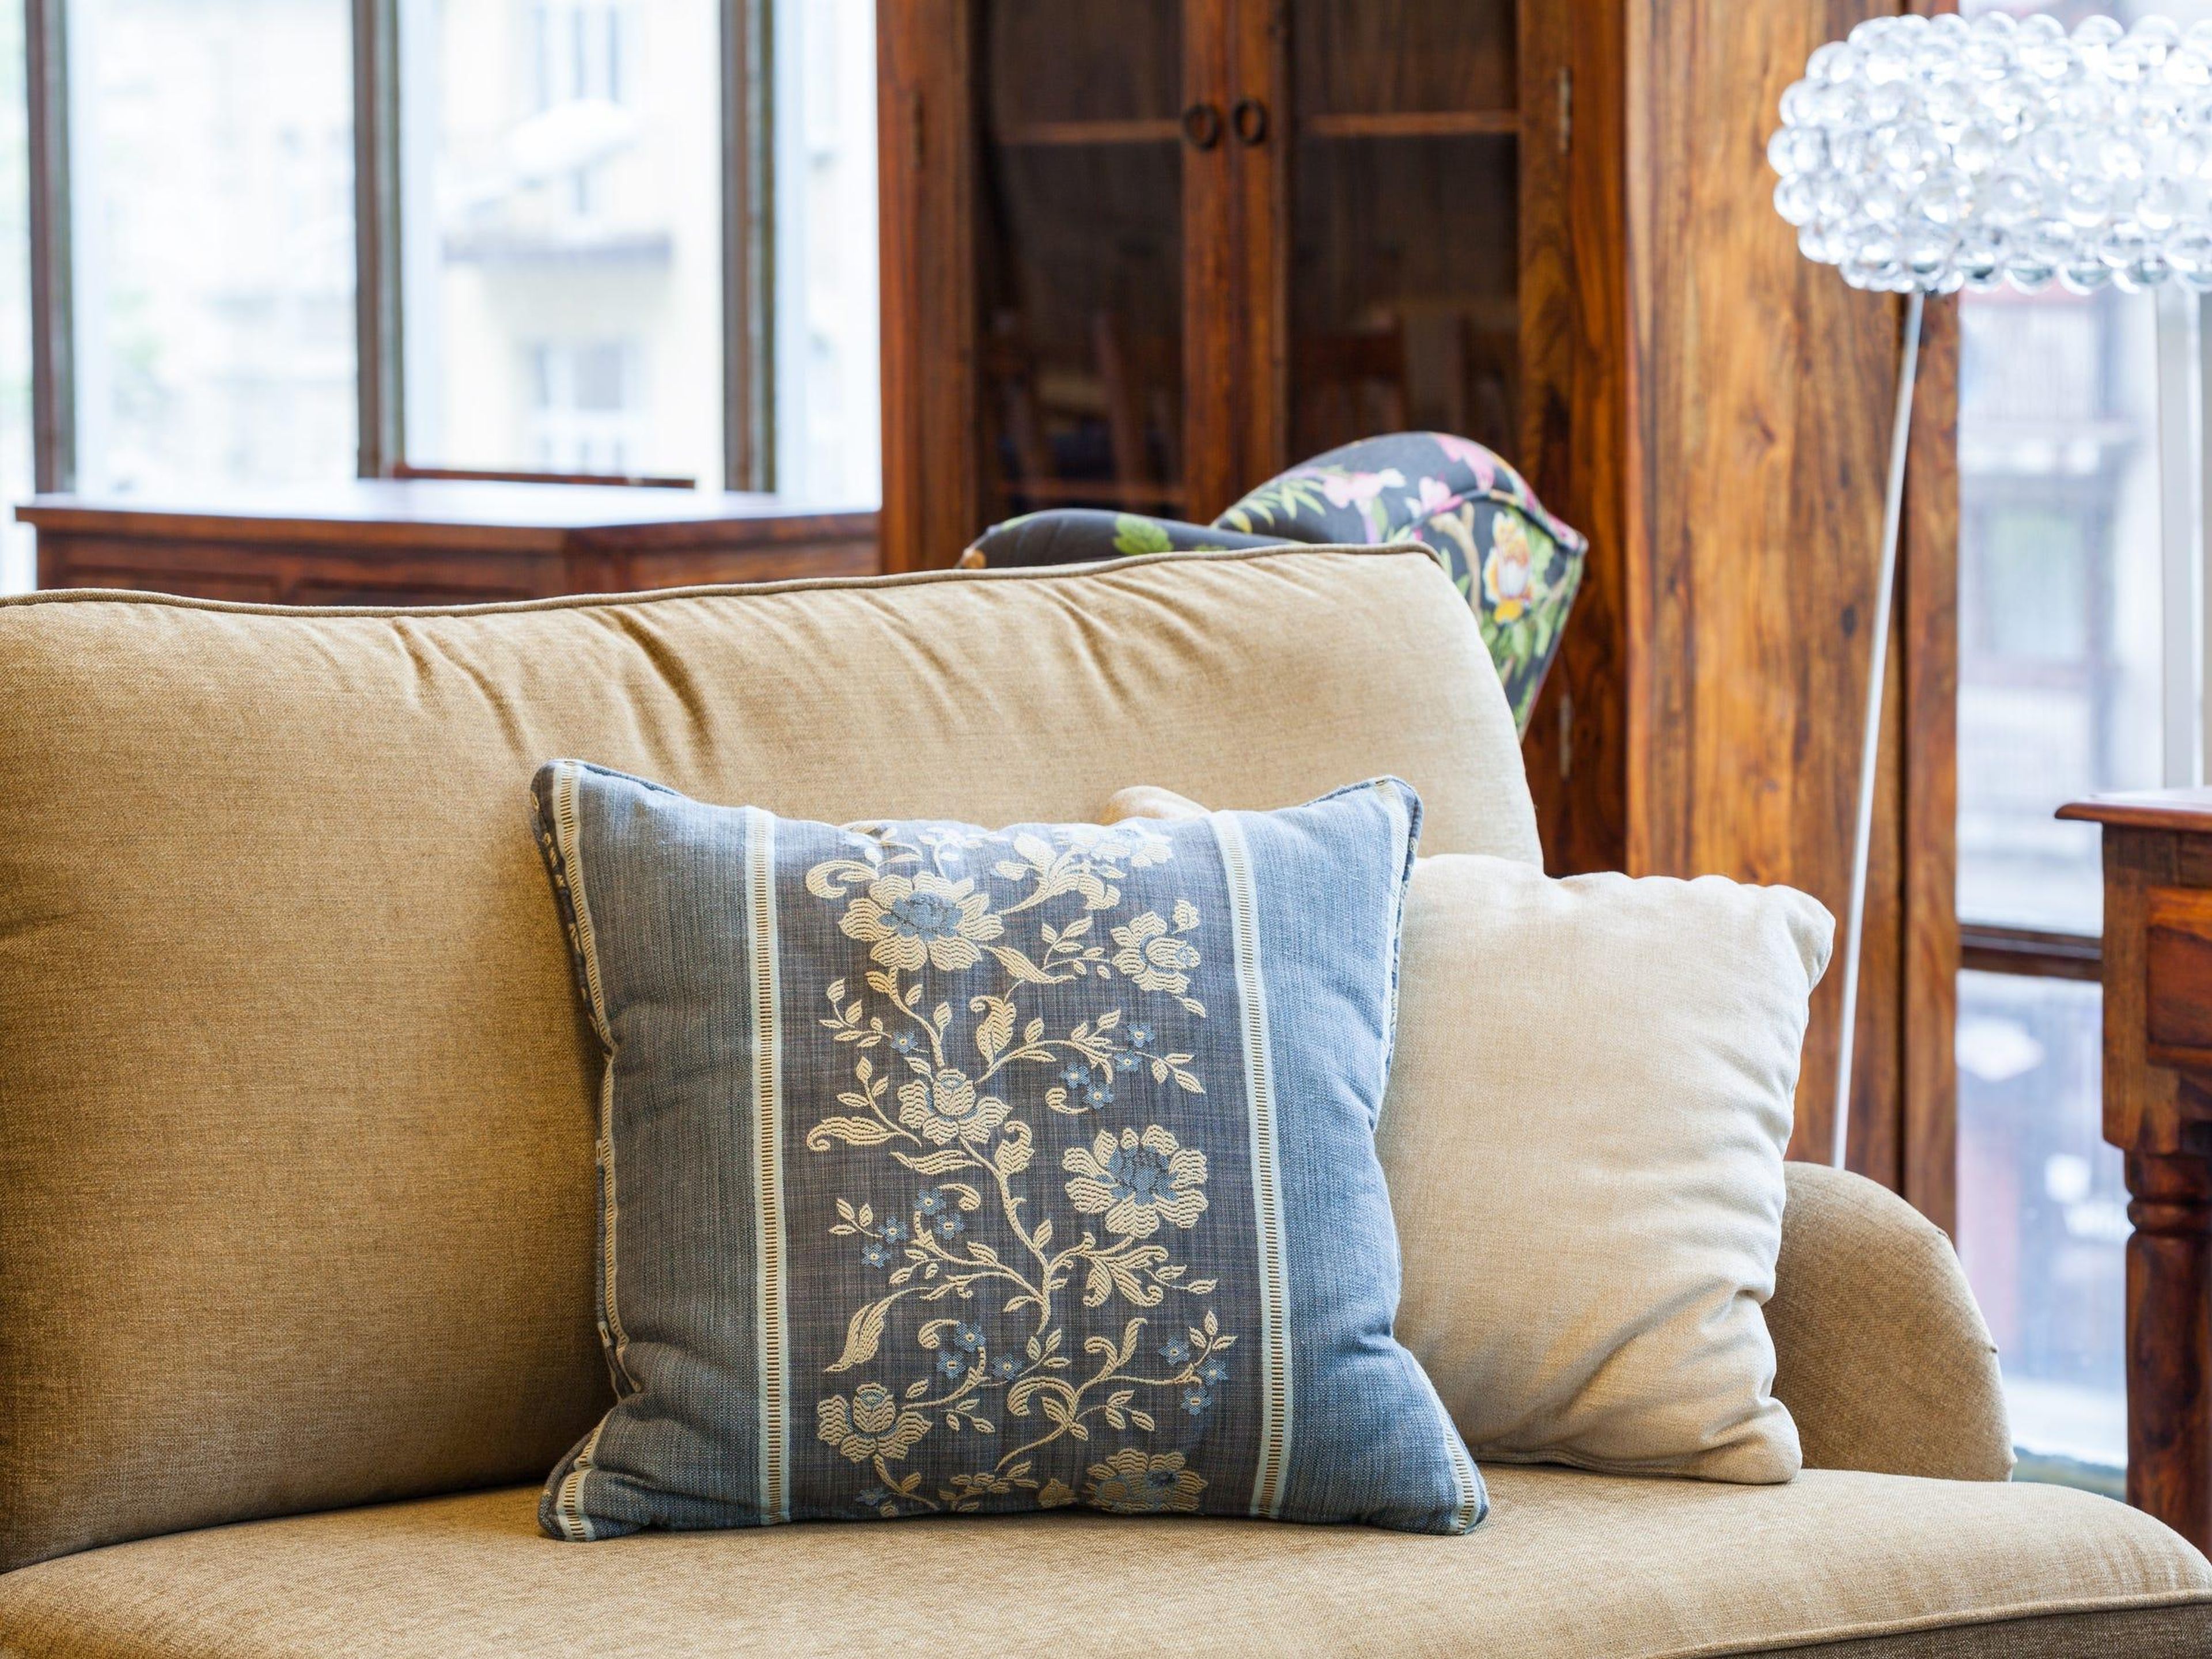 Los cojines del sofá pueden quedar aún mejor en la habitación.